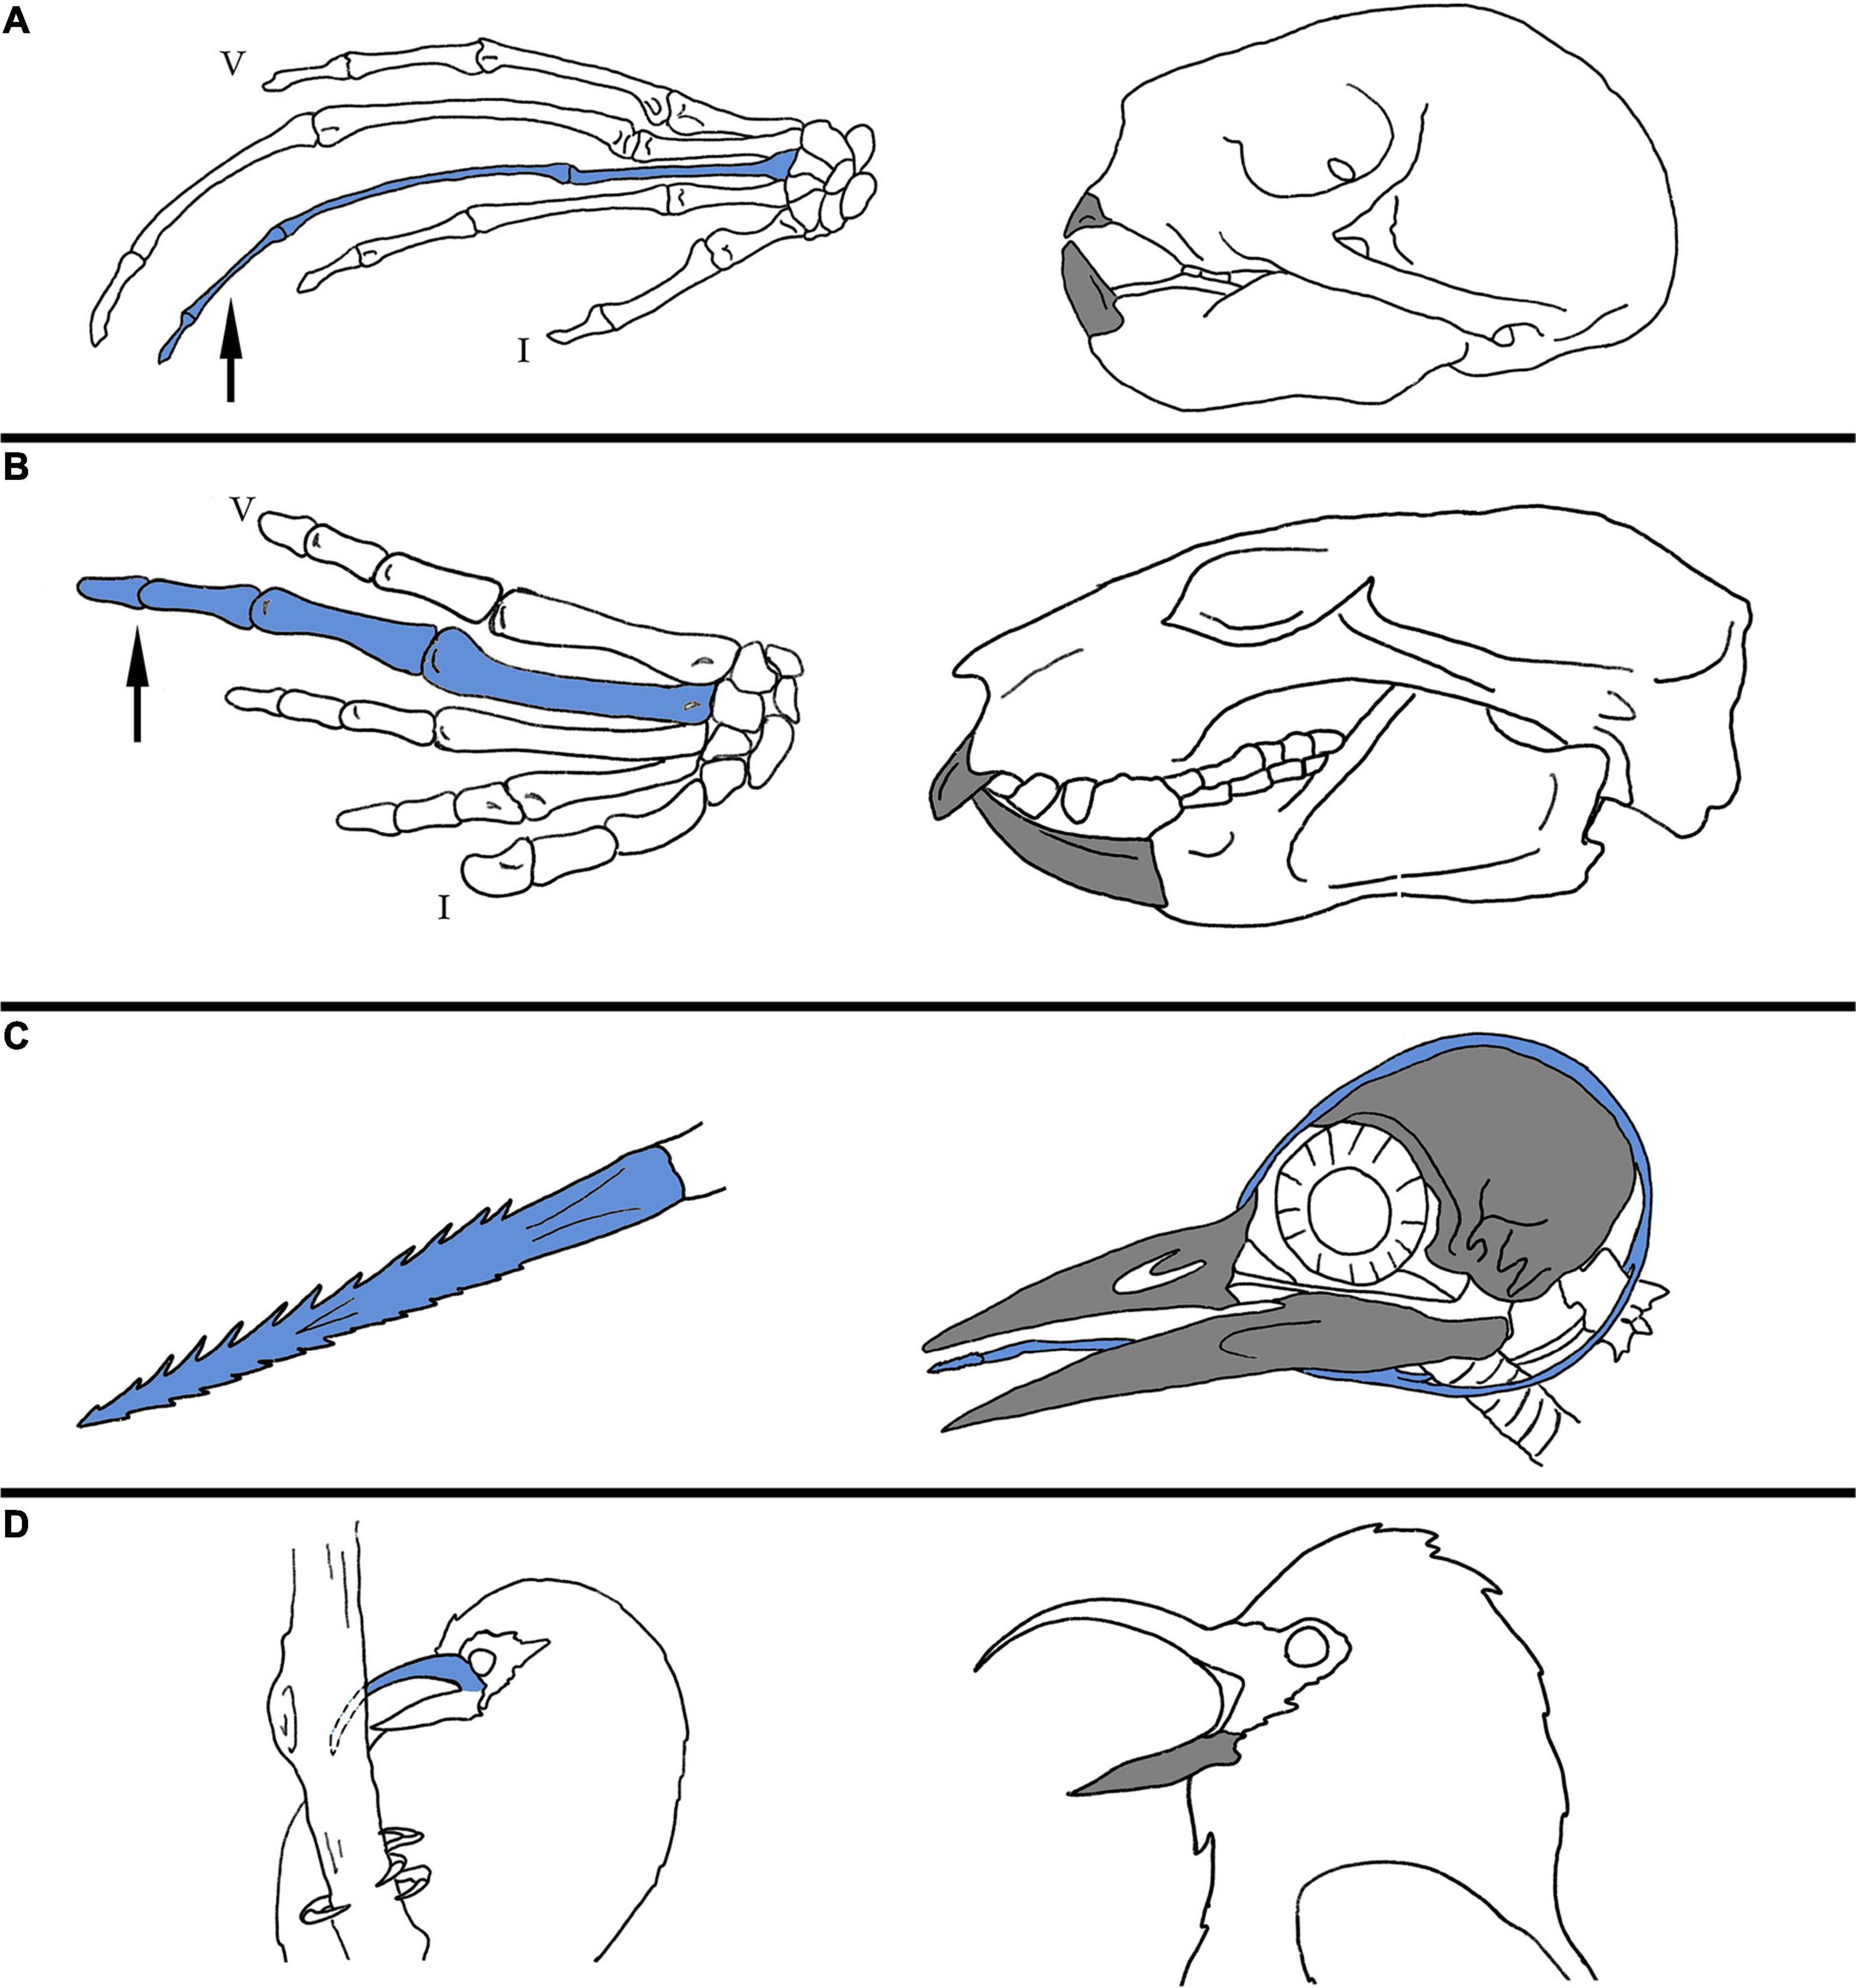 Палеонтологи объяснили функции необычных ног энанциорнисовых птиц из бирманского янтаря